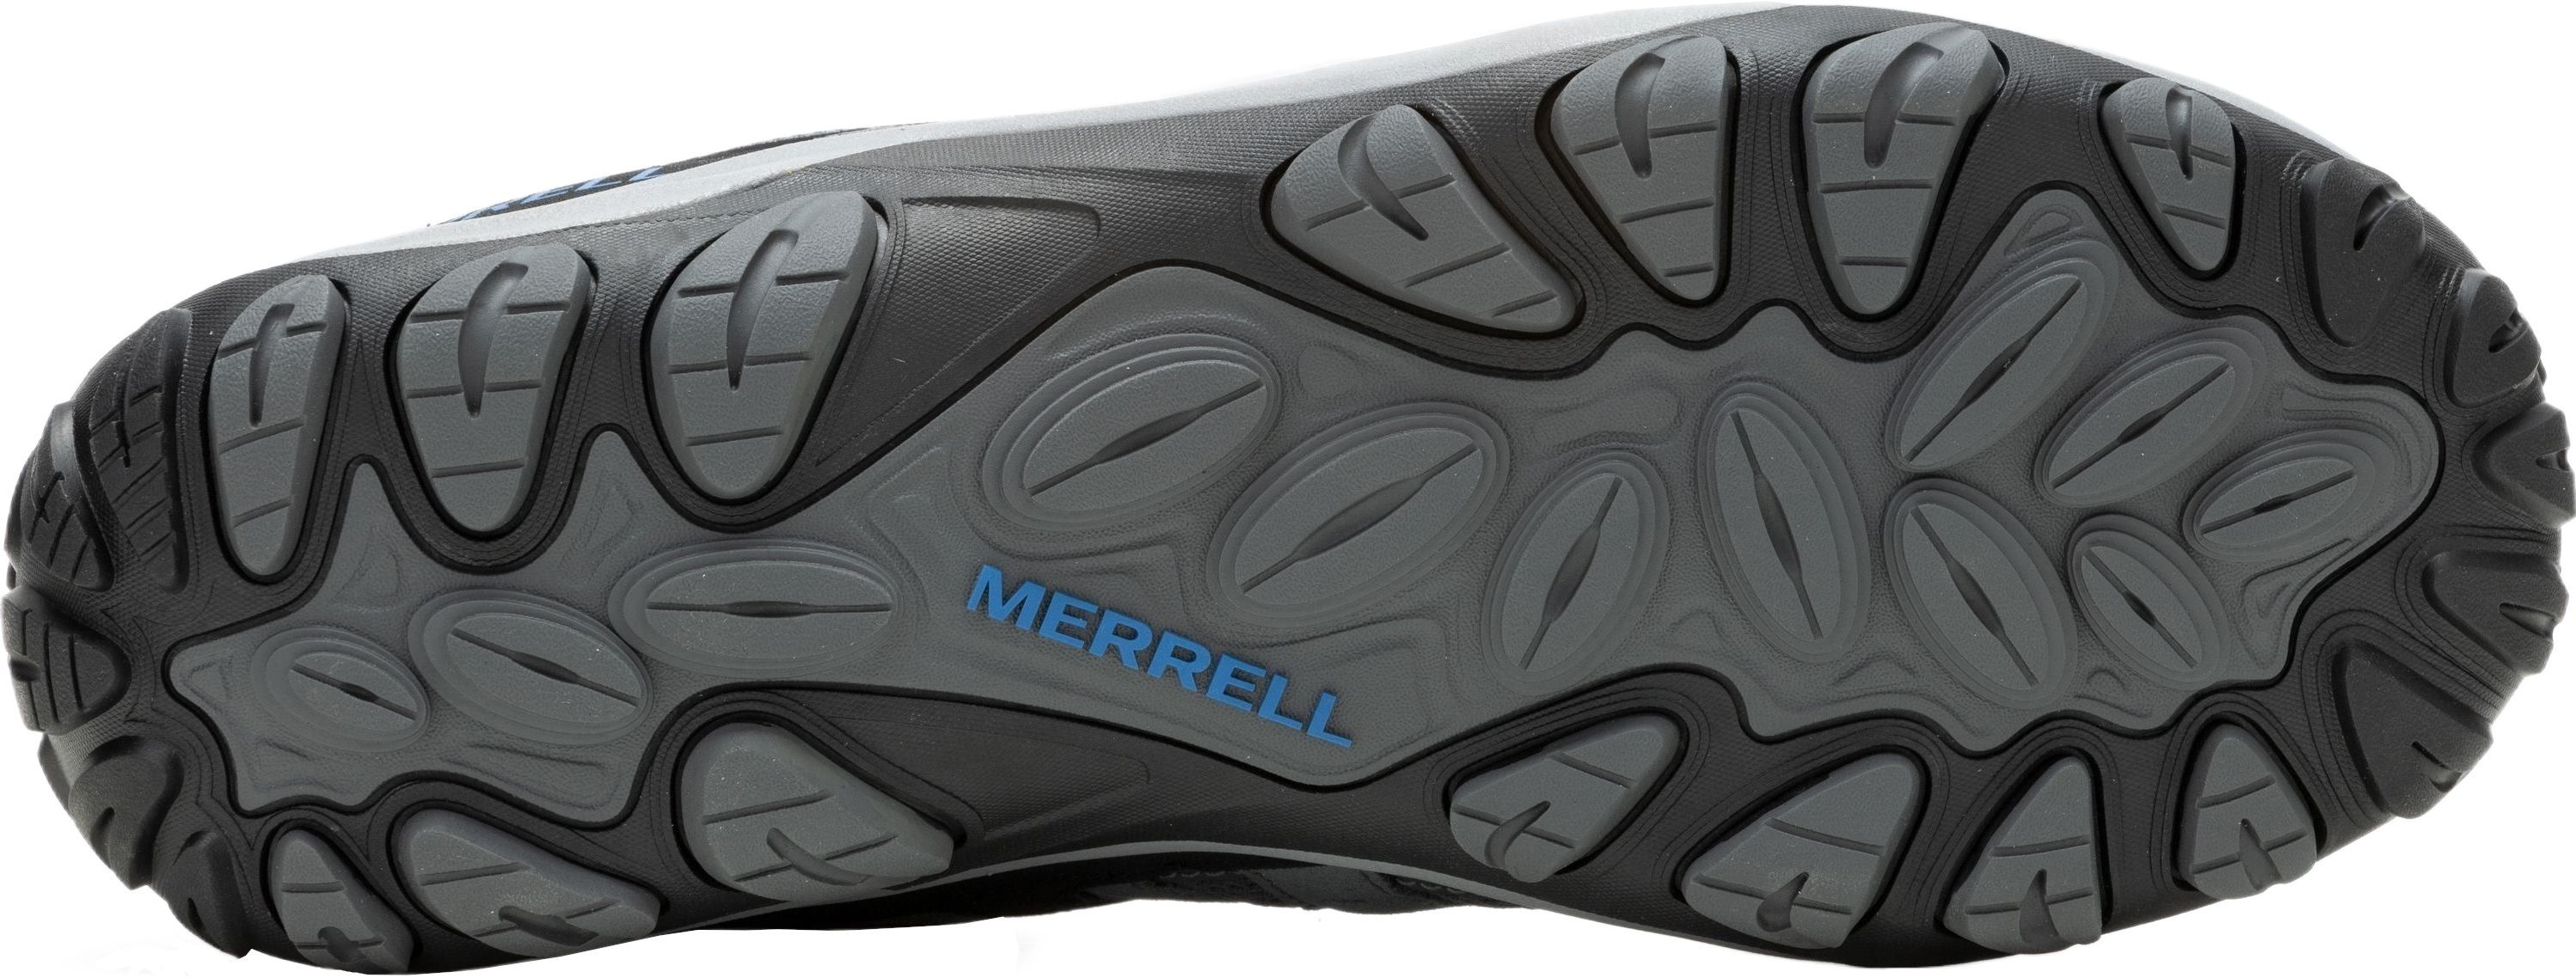 Кроссовки мужские Merrell Accentor 3 Rock/Blue 43 серый/синий фото 6